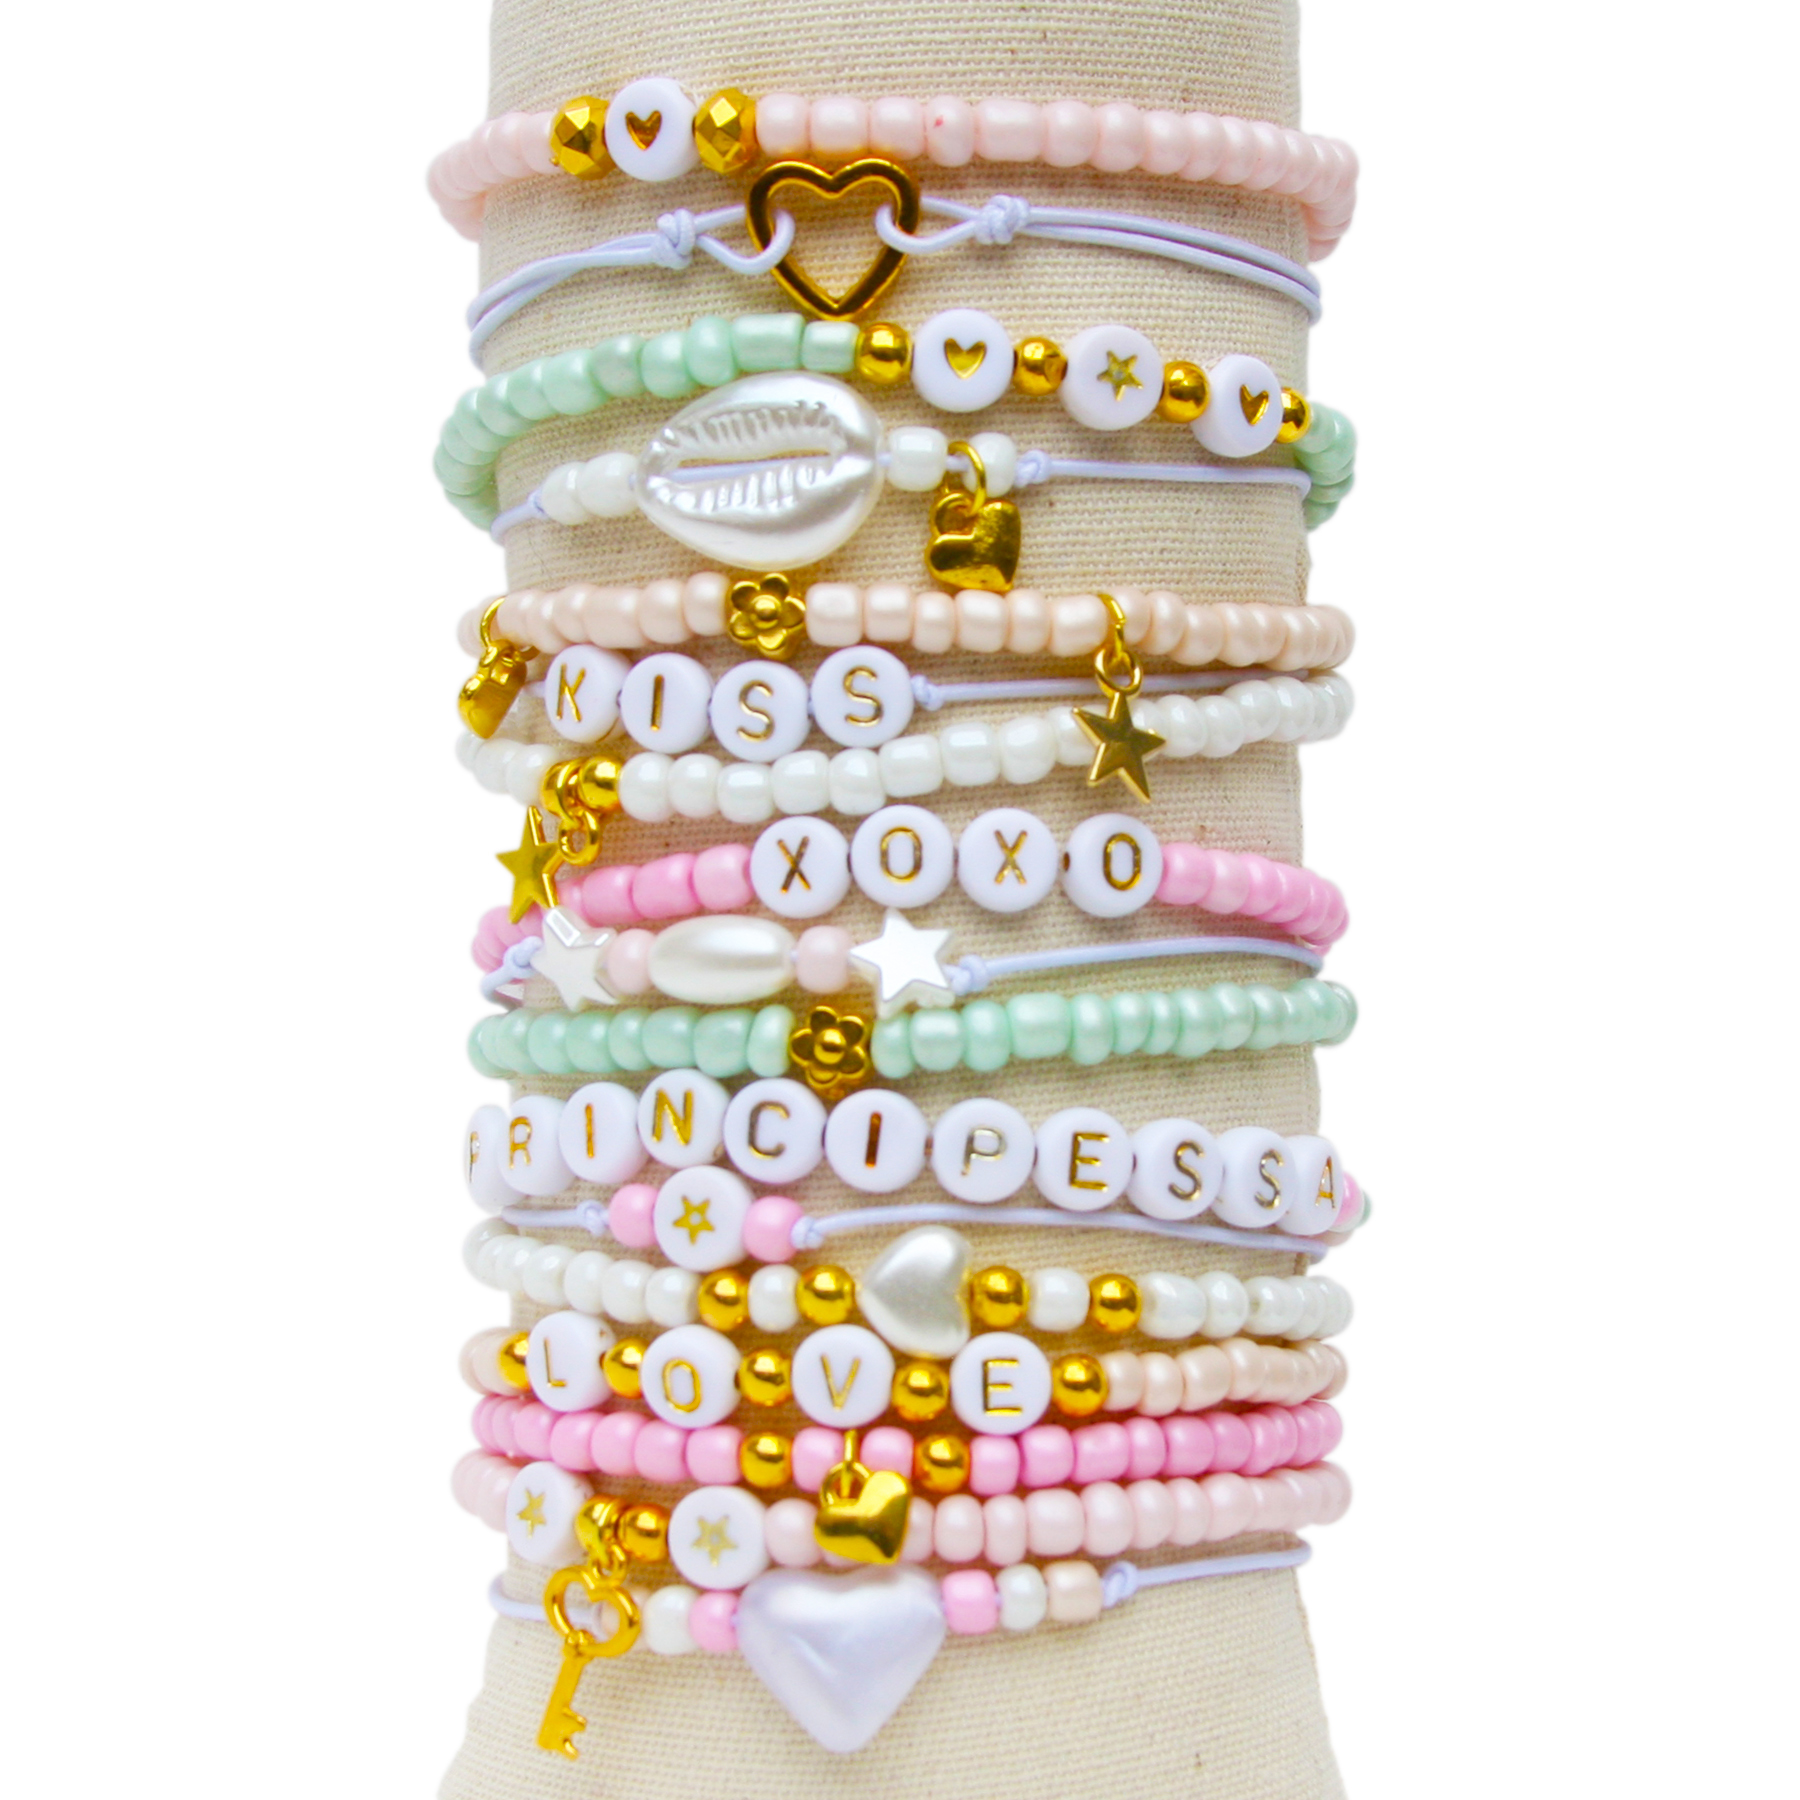 Principessa sieradenpakket voor armbanden – Pastelkleuren – 660 onderdelen – Glas, Acryl, Metaal – Rol elastiek